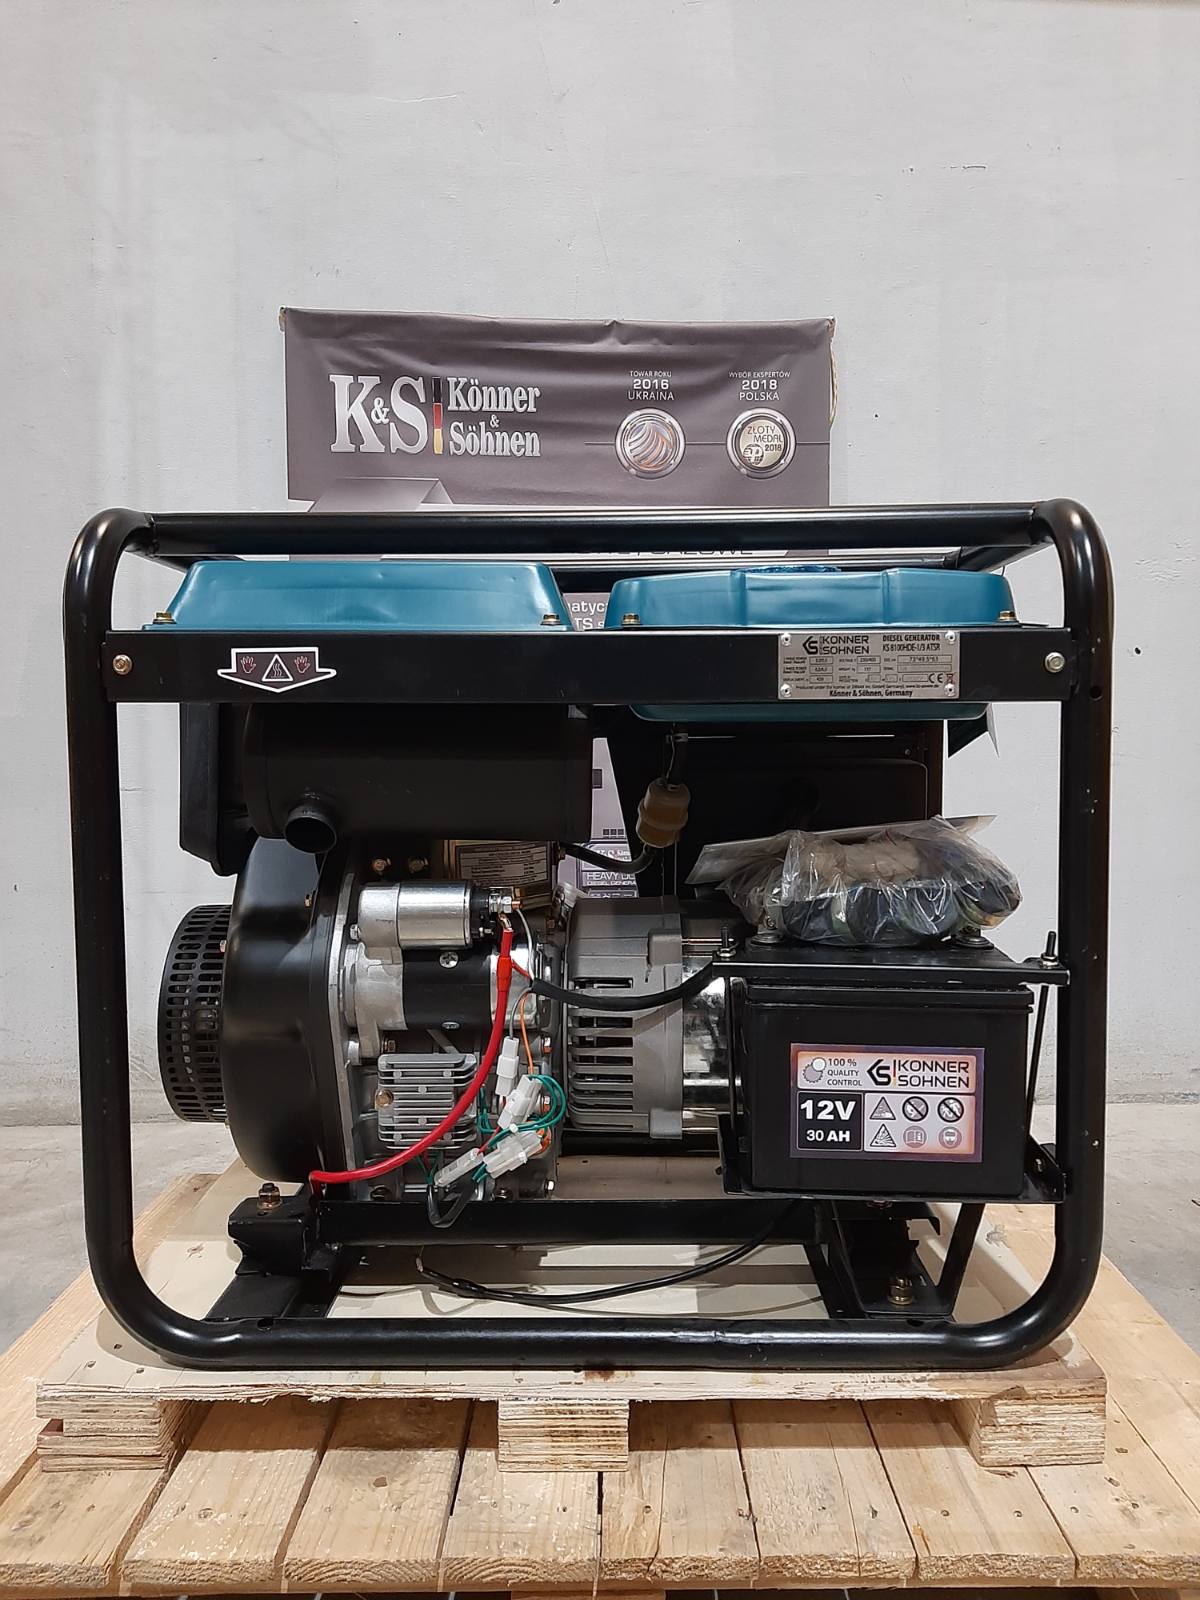 Diesel generator KS 8100HDE-1/3 ATSR (EURO V) (Id 1001)